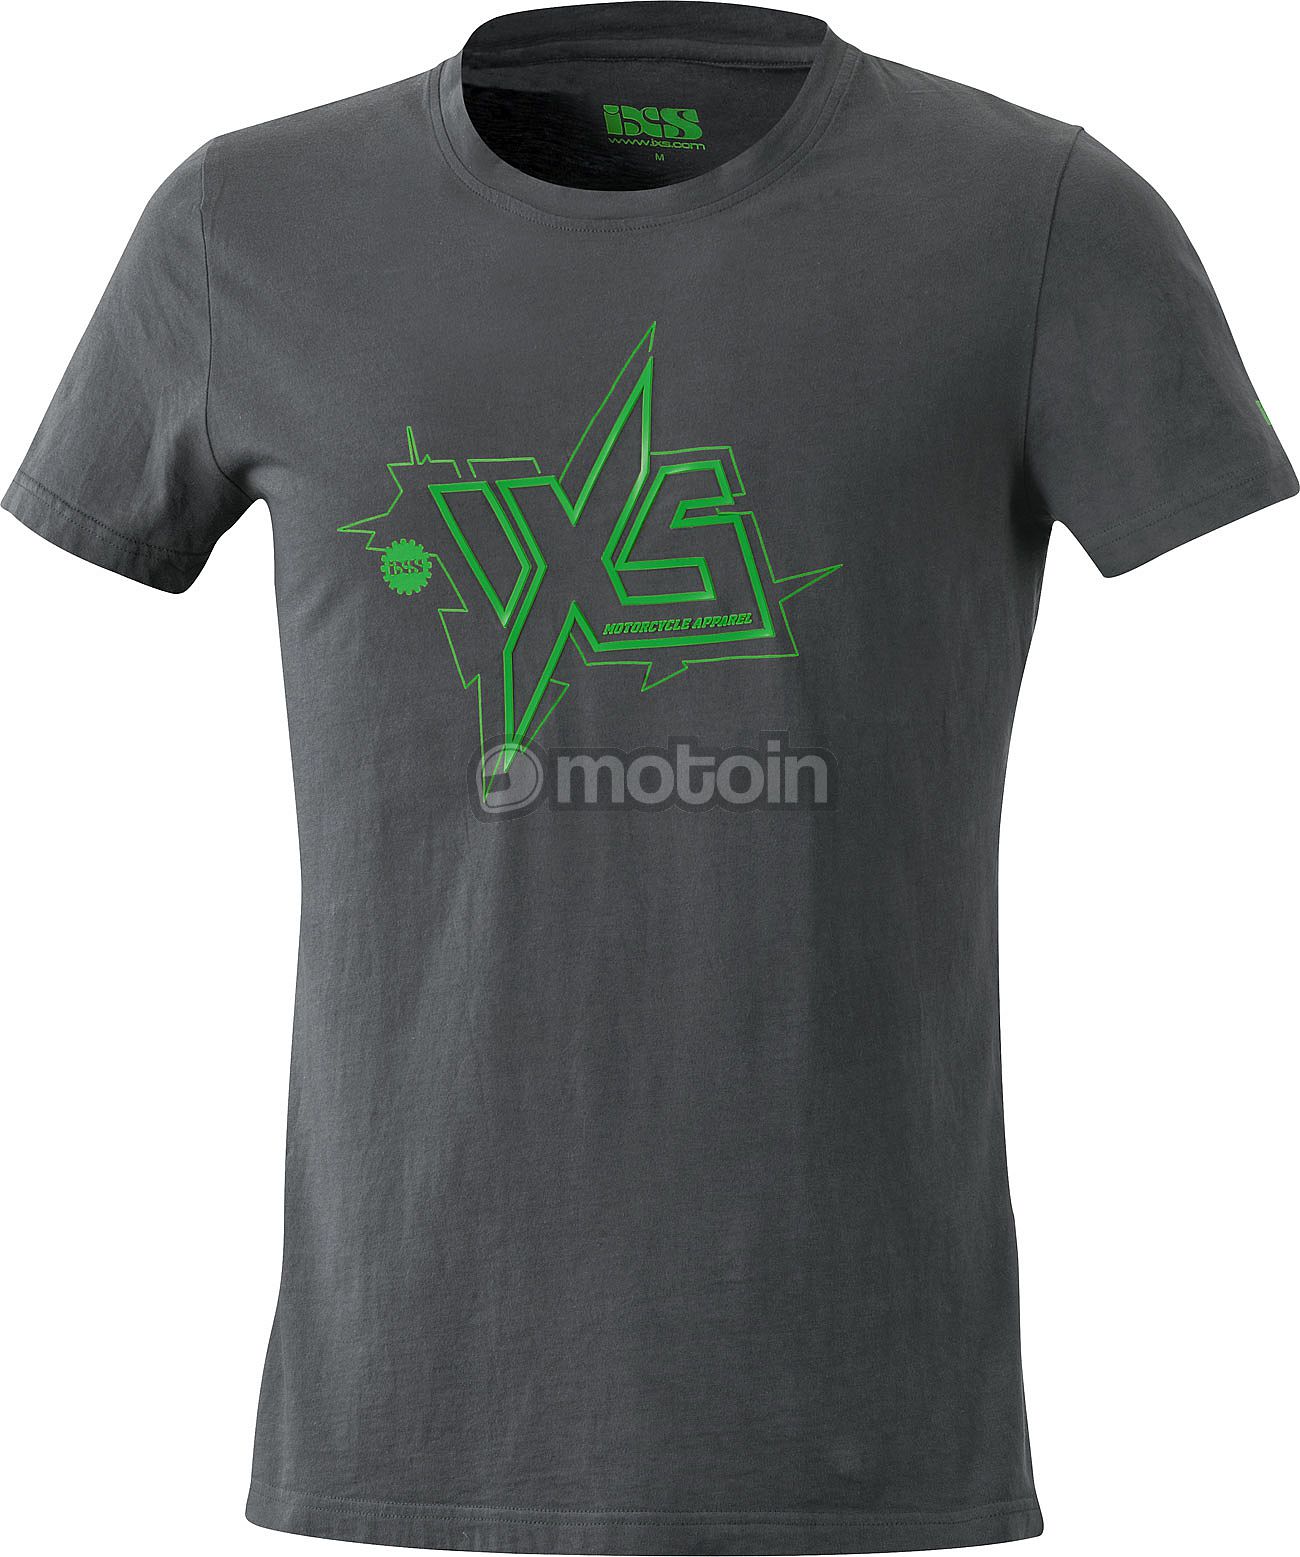 Ixs Jay T-Shirt Tee Gris Verde Para Hombre De Cuello Redondo Informal Motocicleta Moto J&s